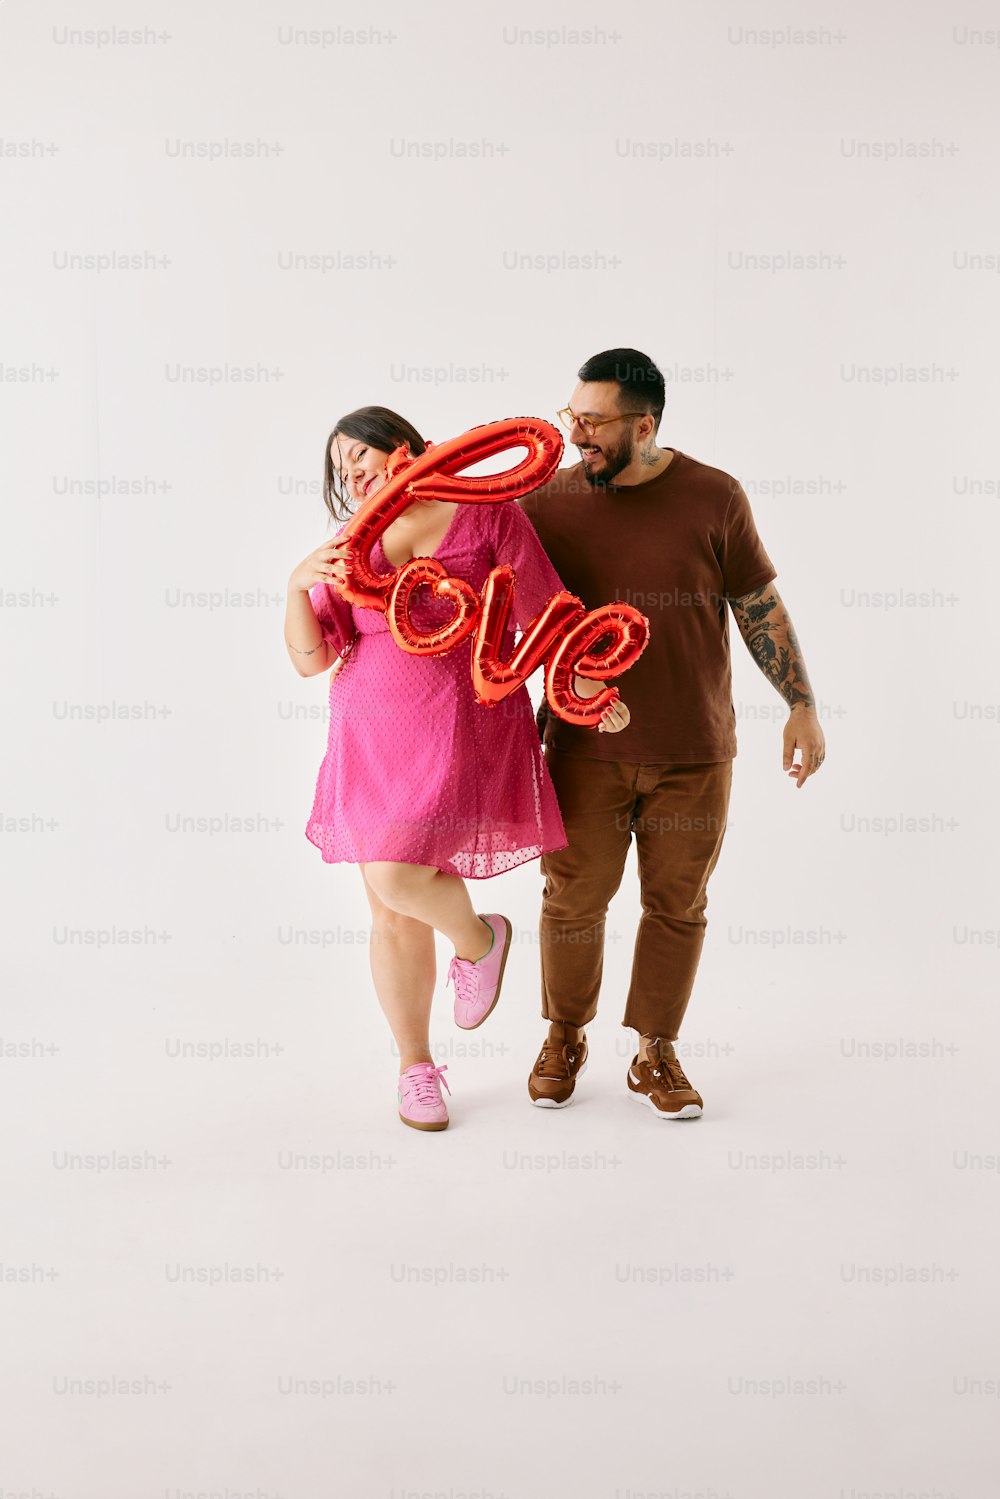 Ein Mann und eine Frau halten einen riesigen Liebesballon